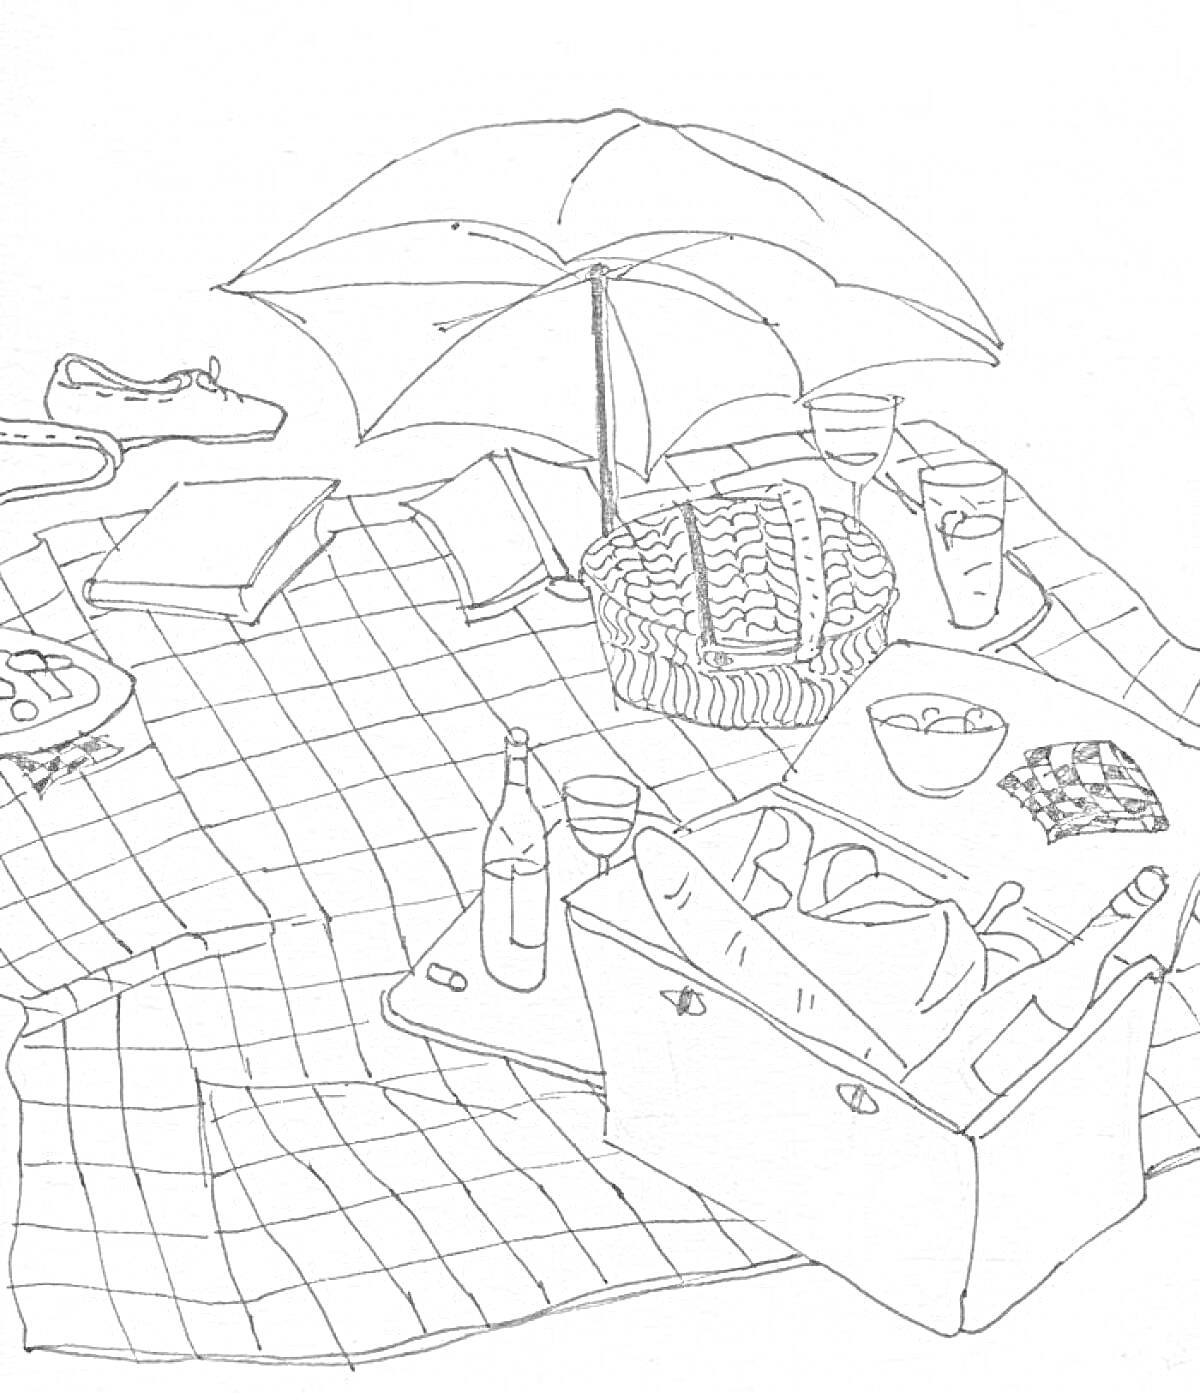 Пикник с зонтом, корзиной, бутылками, очками, стаканами, подушками, едой и пледом